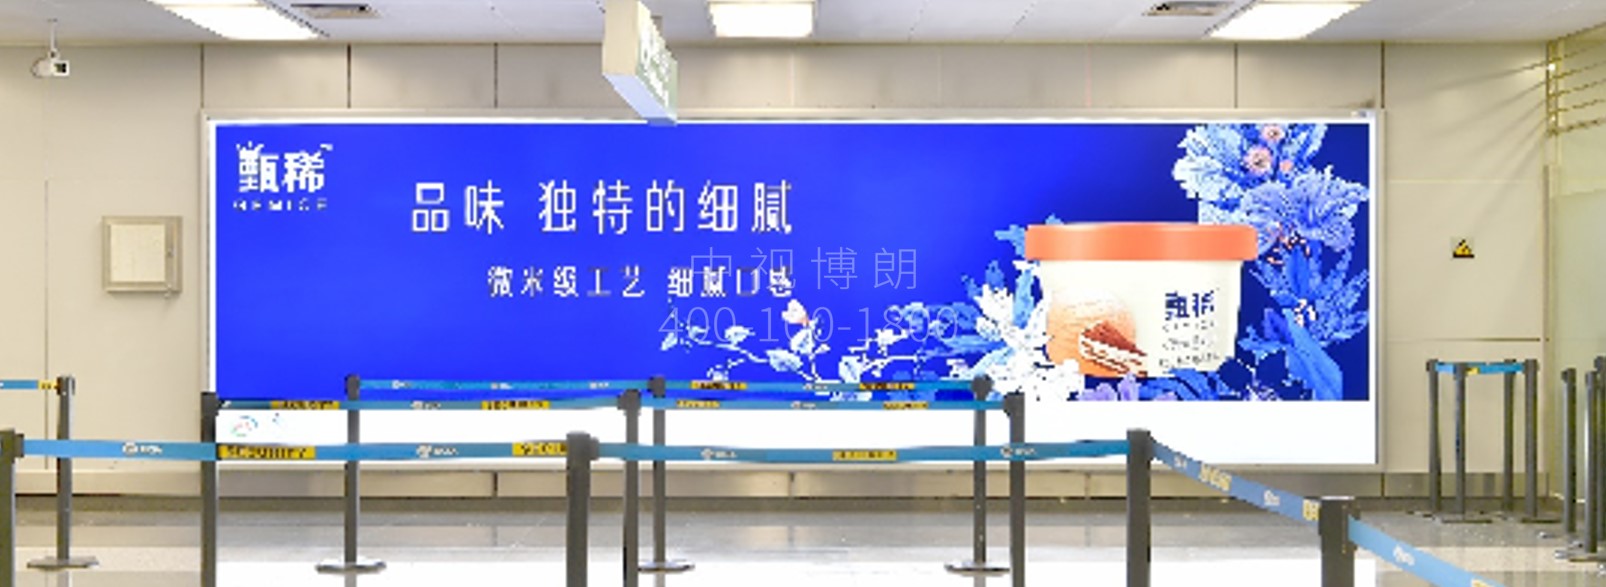 北京首都机场广告-T2国内出发安检旁墙面灯箱